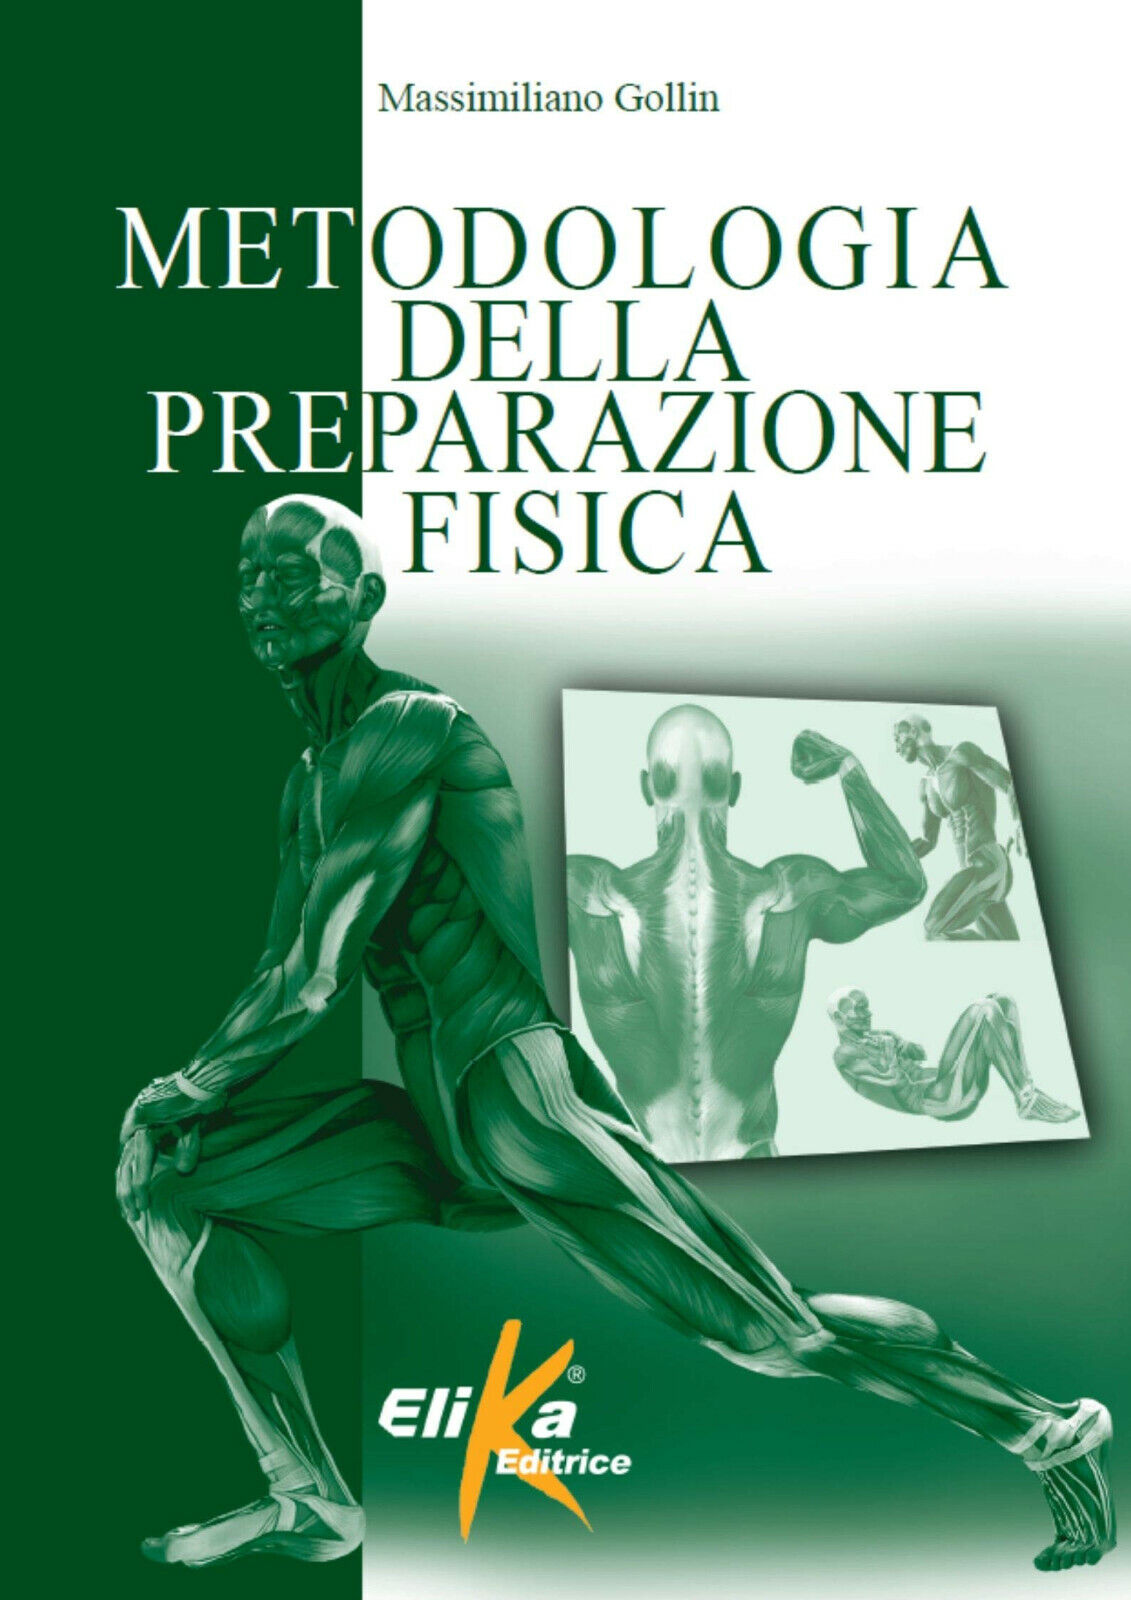 Metodologia della preparazione fisica - Massimiliano Gollin - Elika, 2014 libro usato